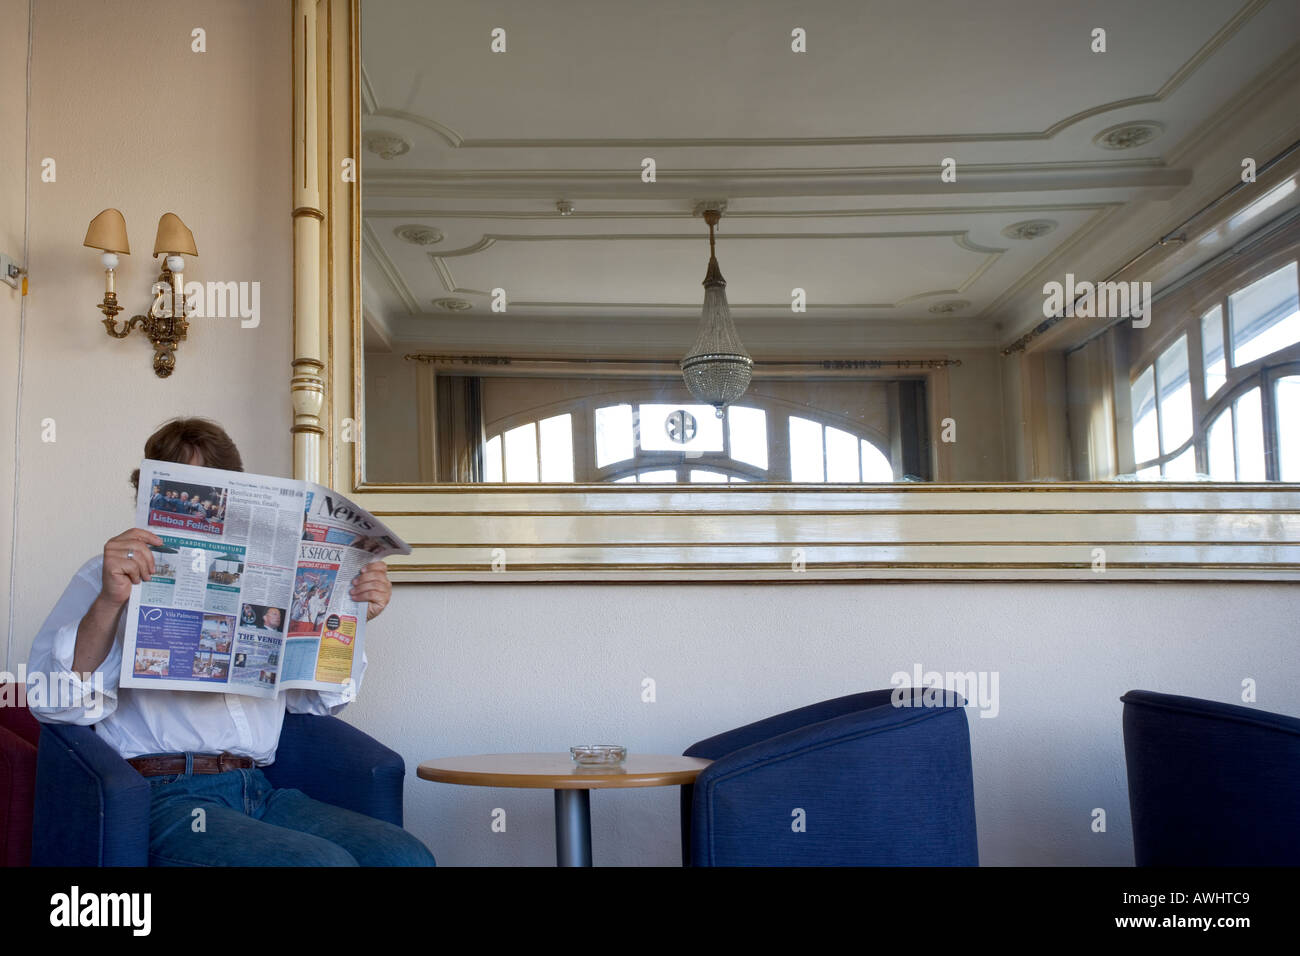 Un homme lit le journal dans une salle vide avec un grand miroir doré. Banque D'Images